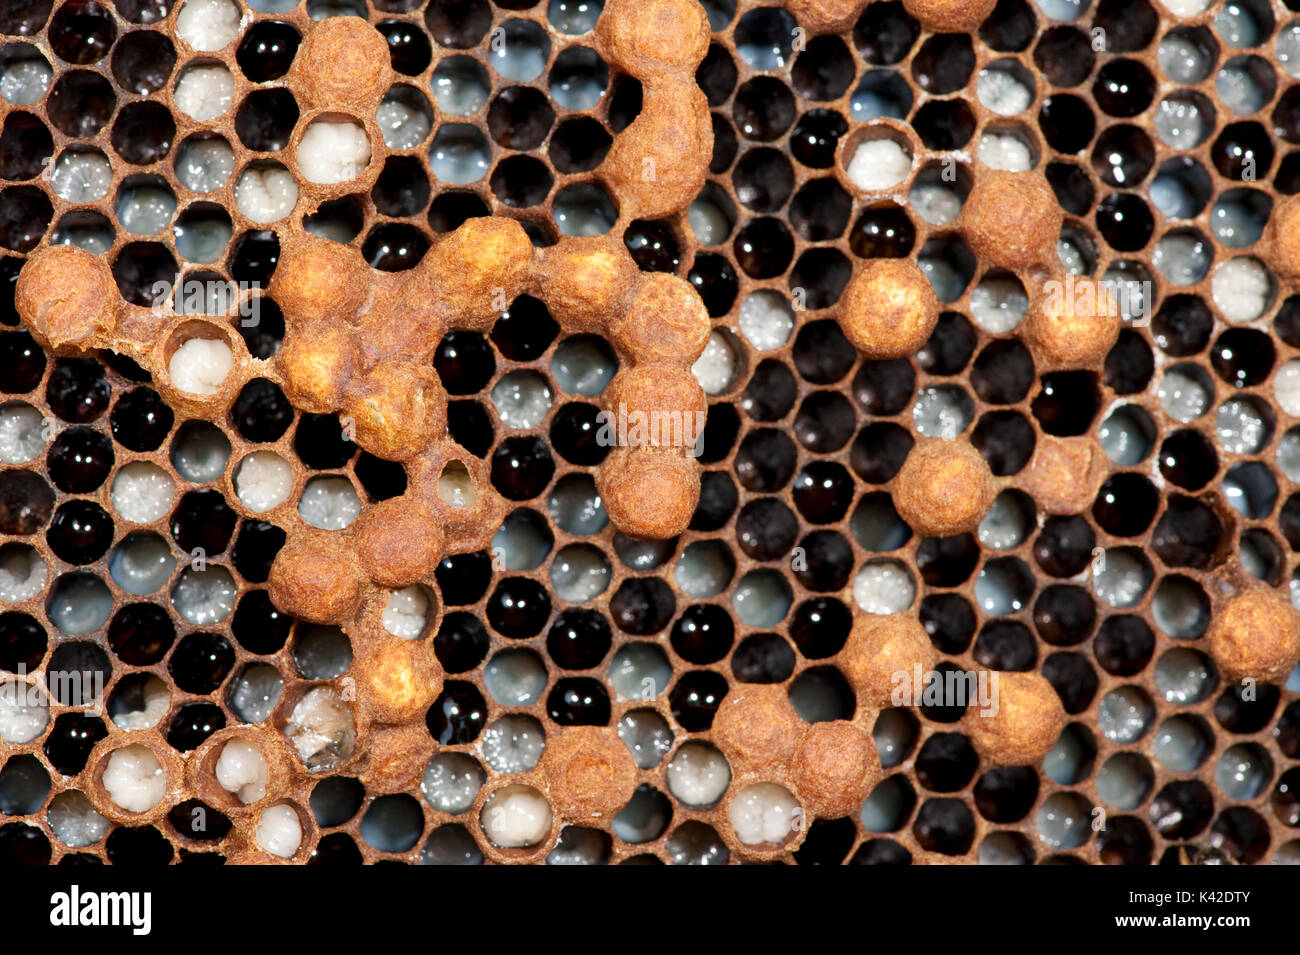 Les larves de bourdon, abeille, Apis mellifera, Kent UK, dans les cellules de honecomb, ruche couvain, montrant de plus en plus et certaines cellules plafonné de drones et d'autres avec des oeufs je Banque D'Images